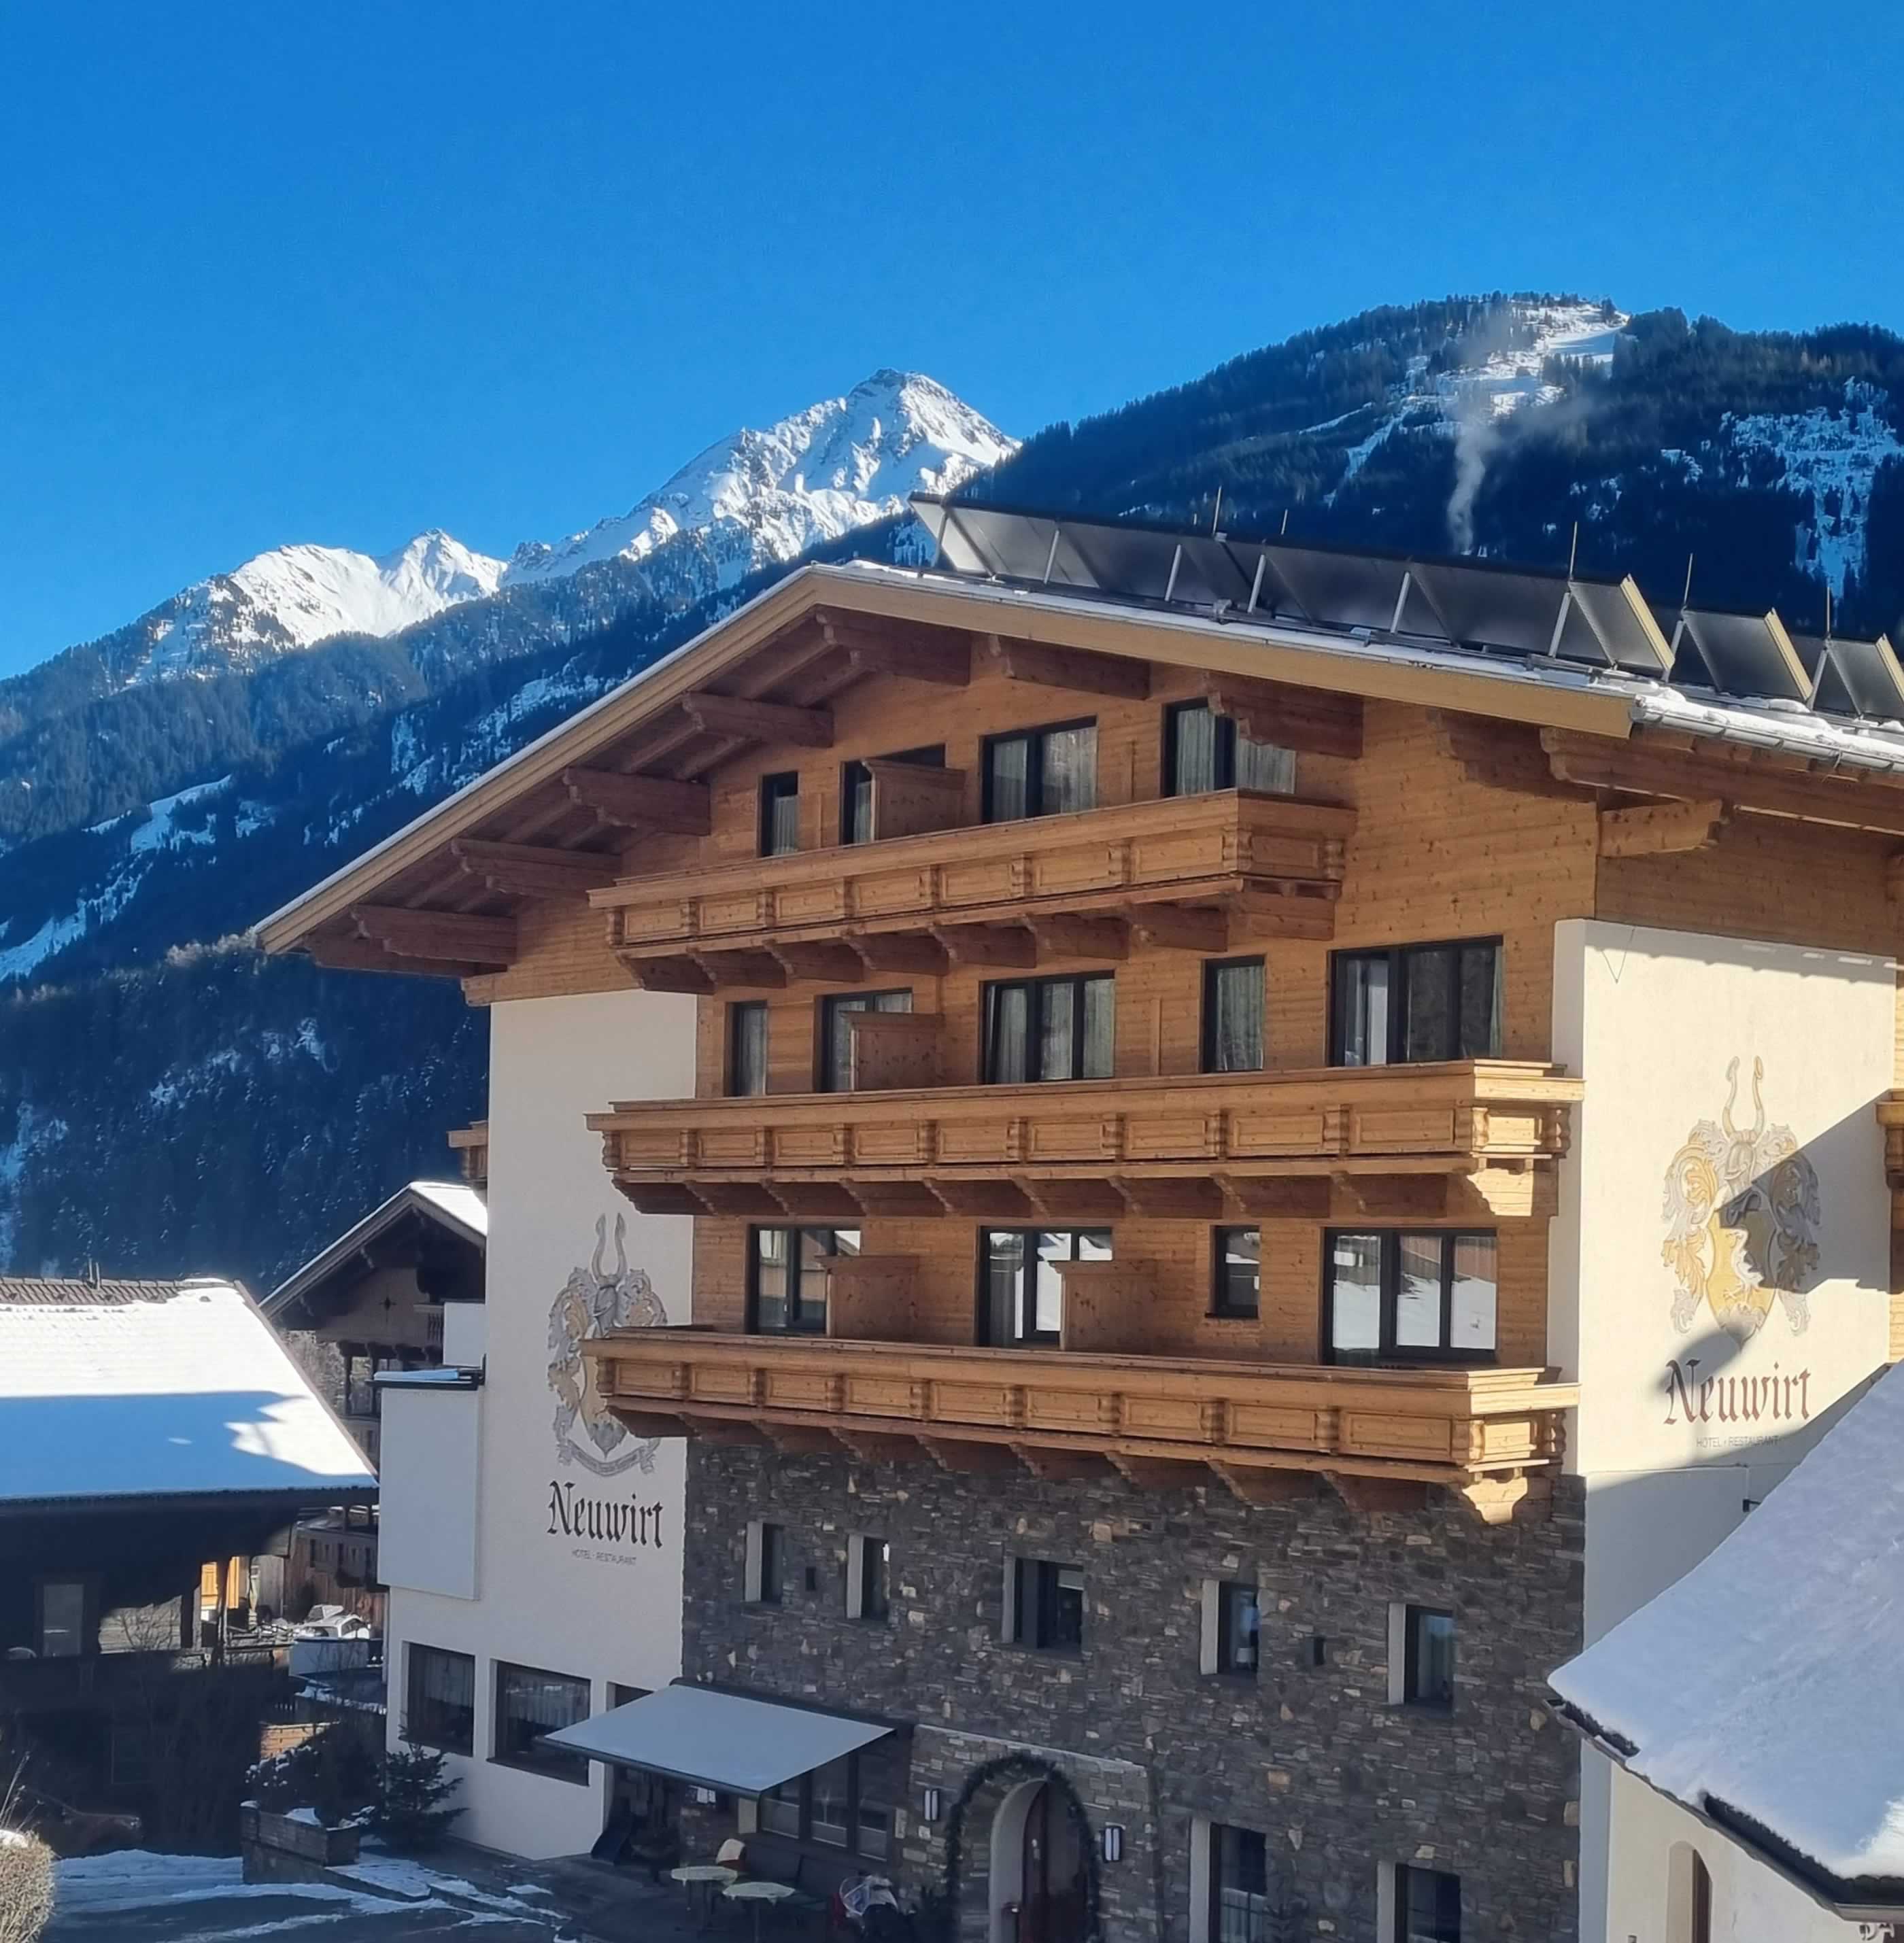 Hotel Neuwirt Finkenberg - Zillertal - Tirol